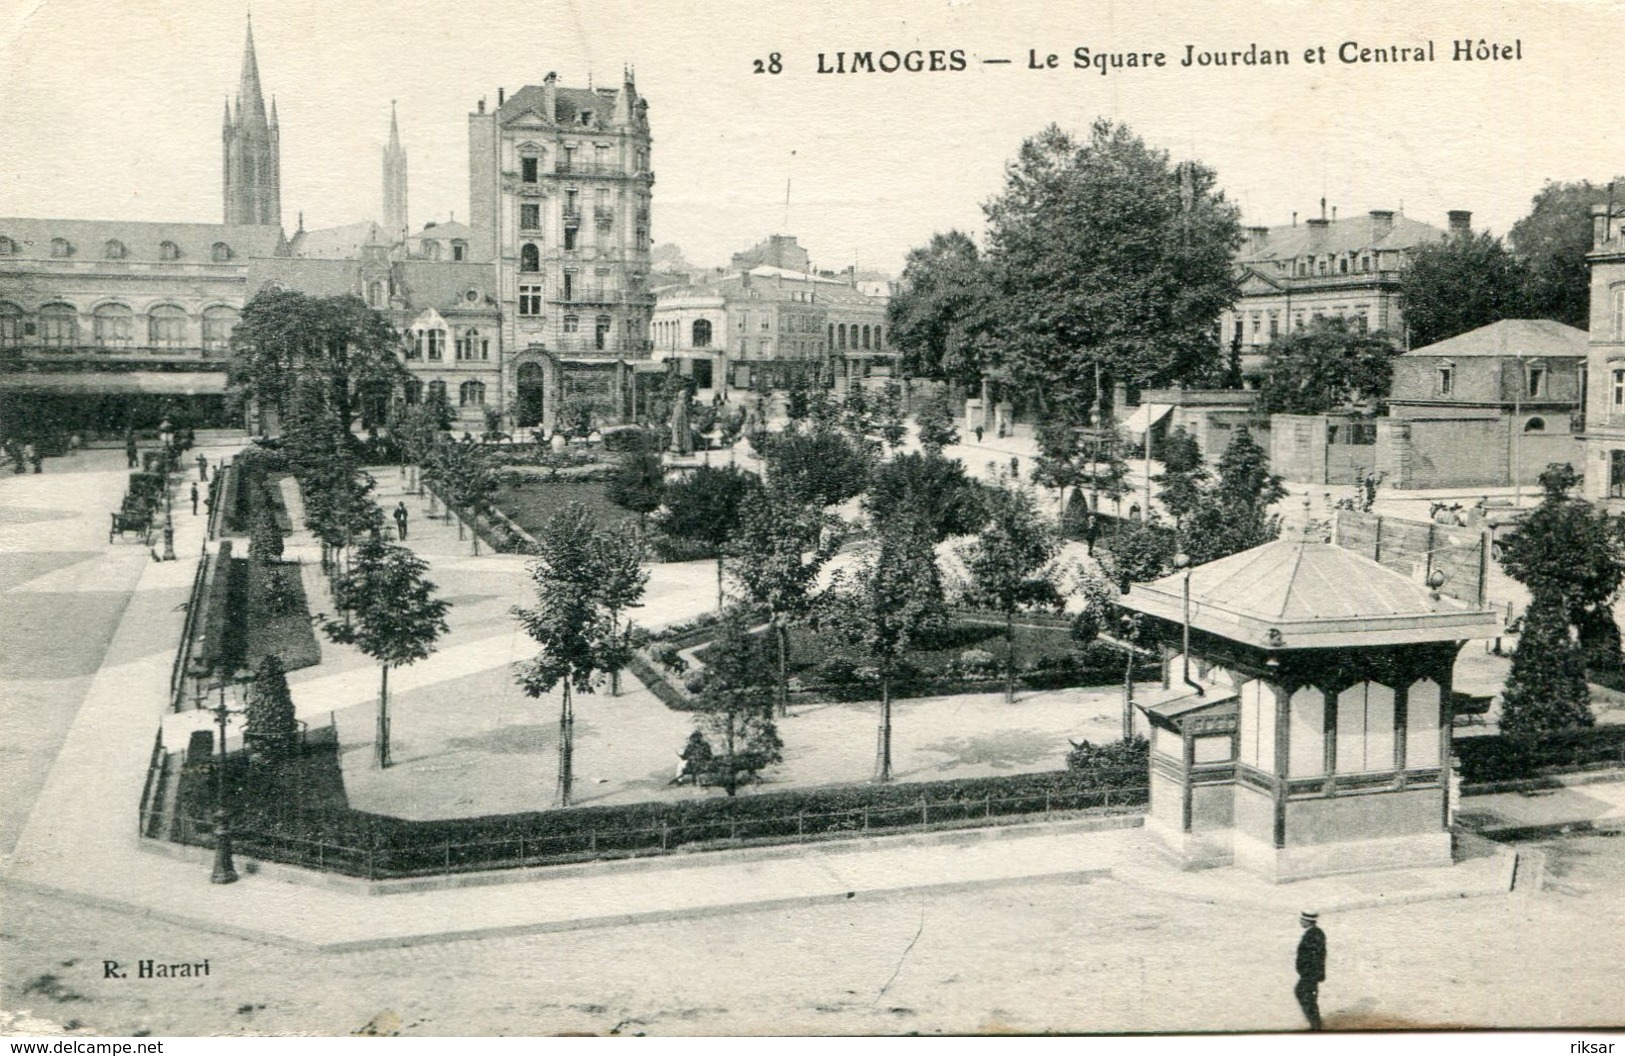 LIMOGES(HOTEL) - Limoges